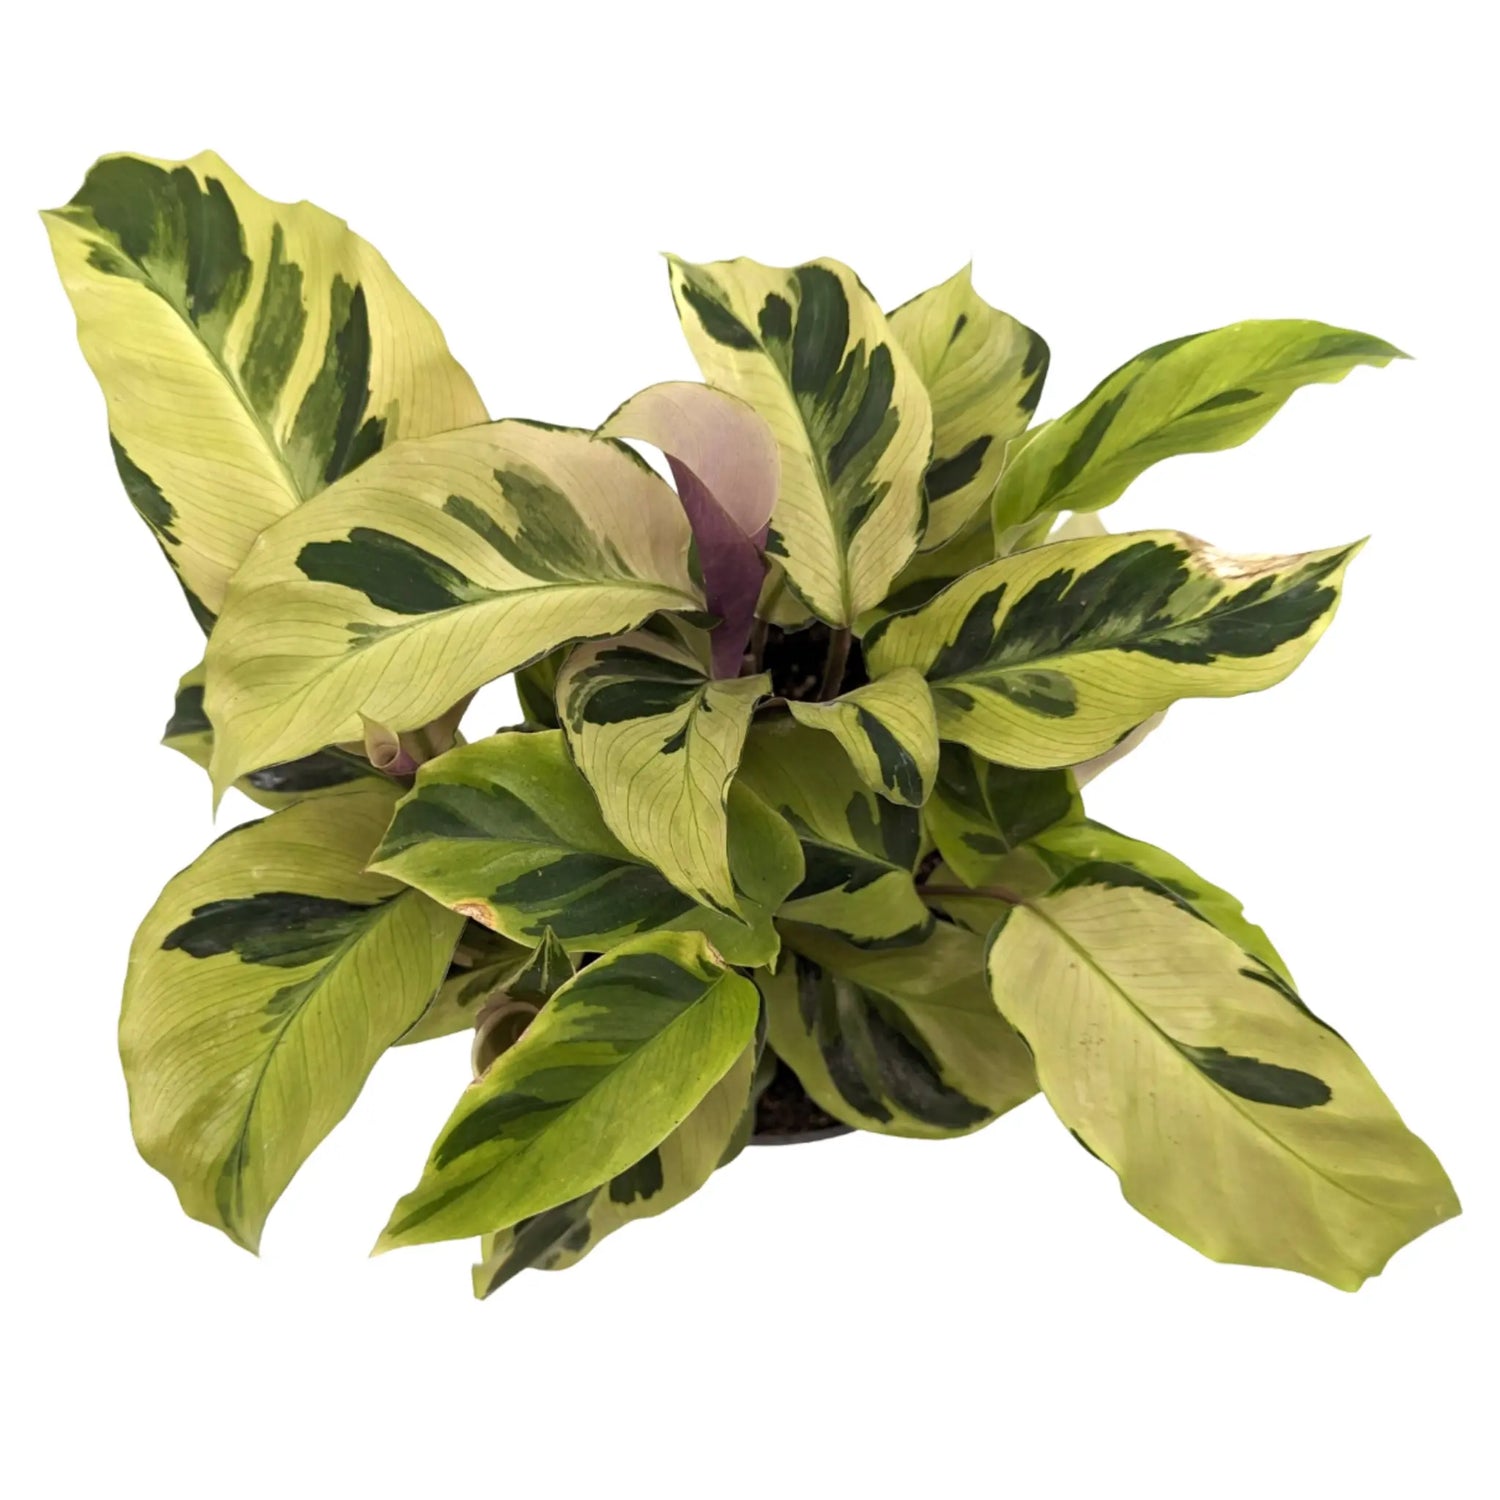 Copy of Calathea Fusion White Leaf Culture